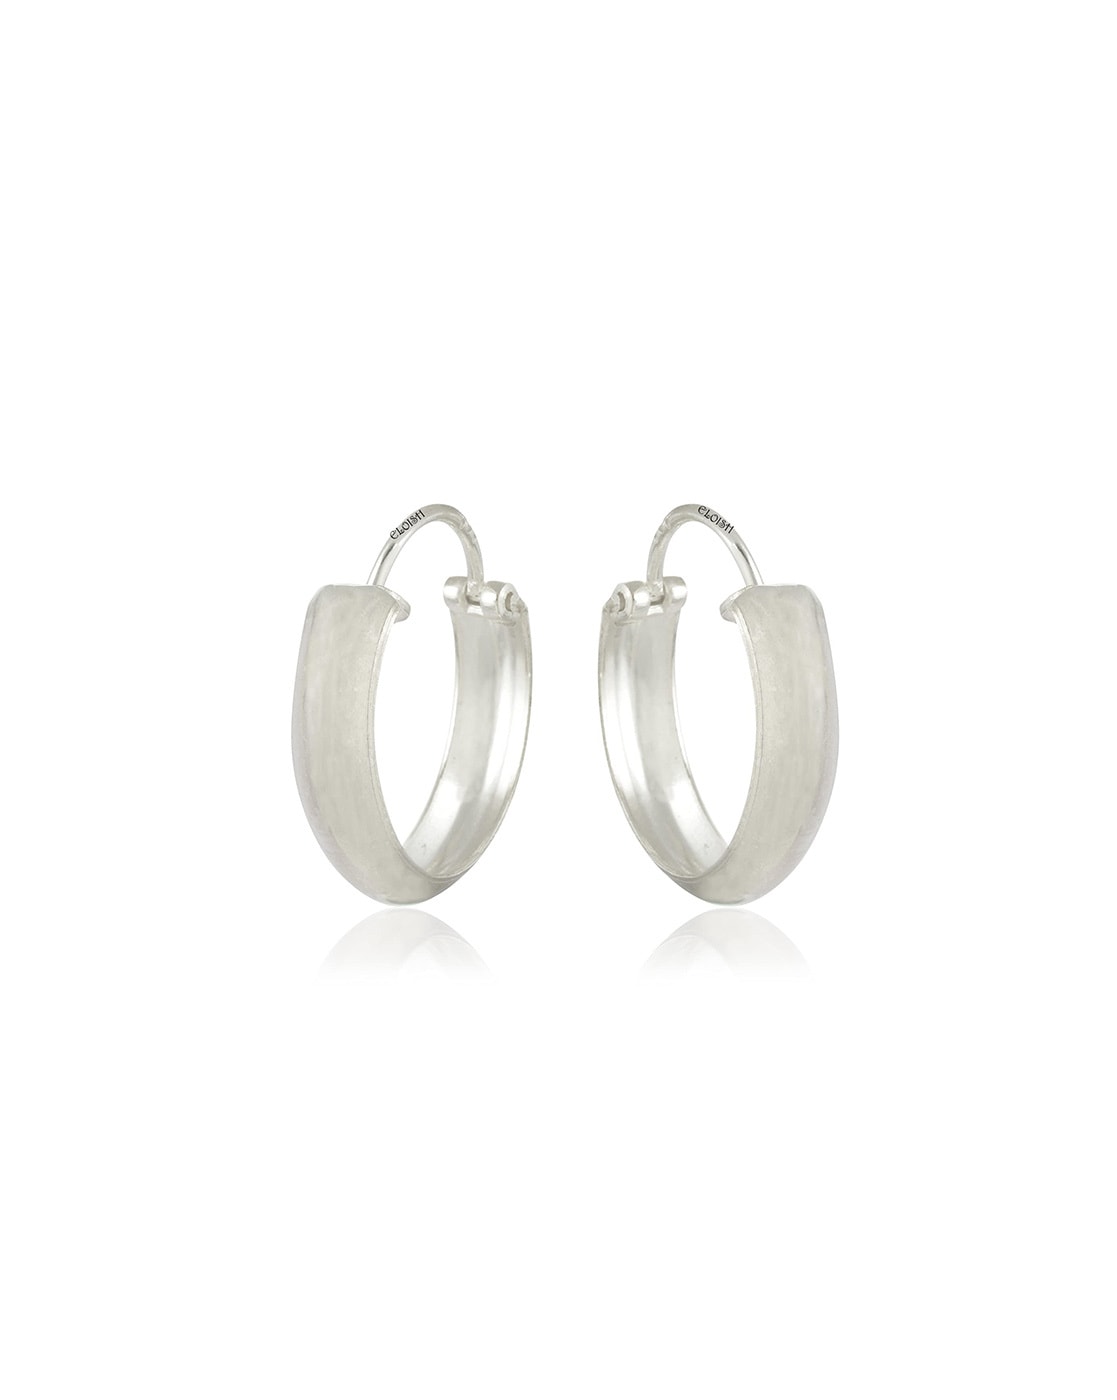 Buy Silver Earrings for Men by Eloish Online | Ajio.com